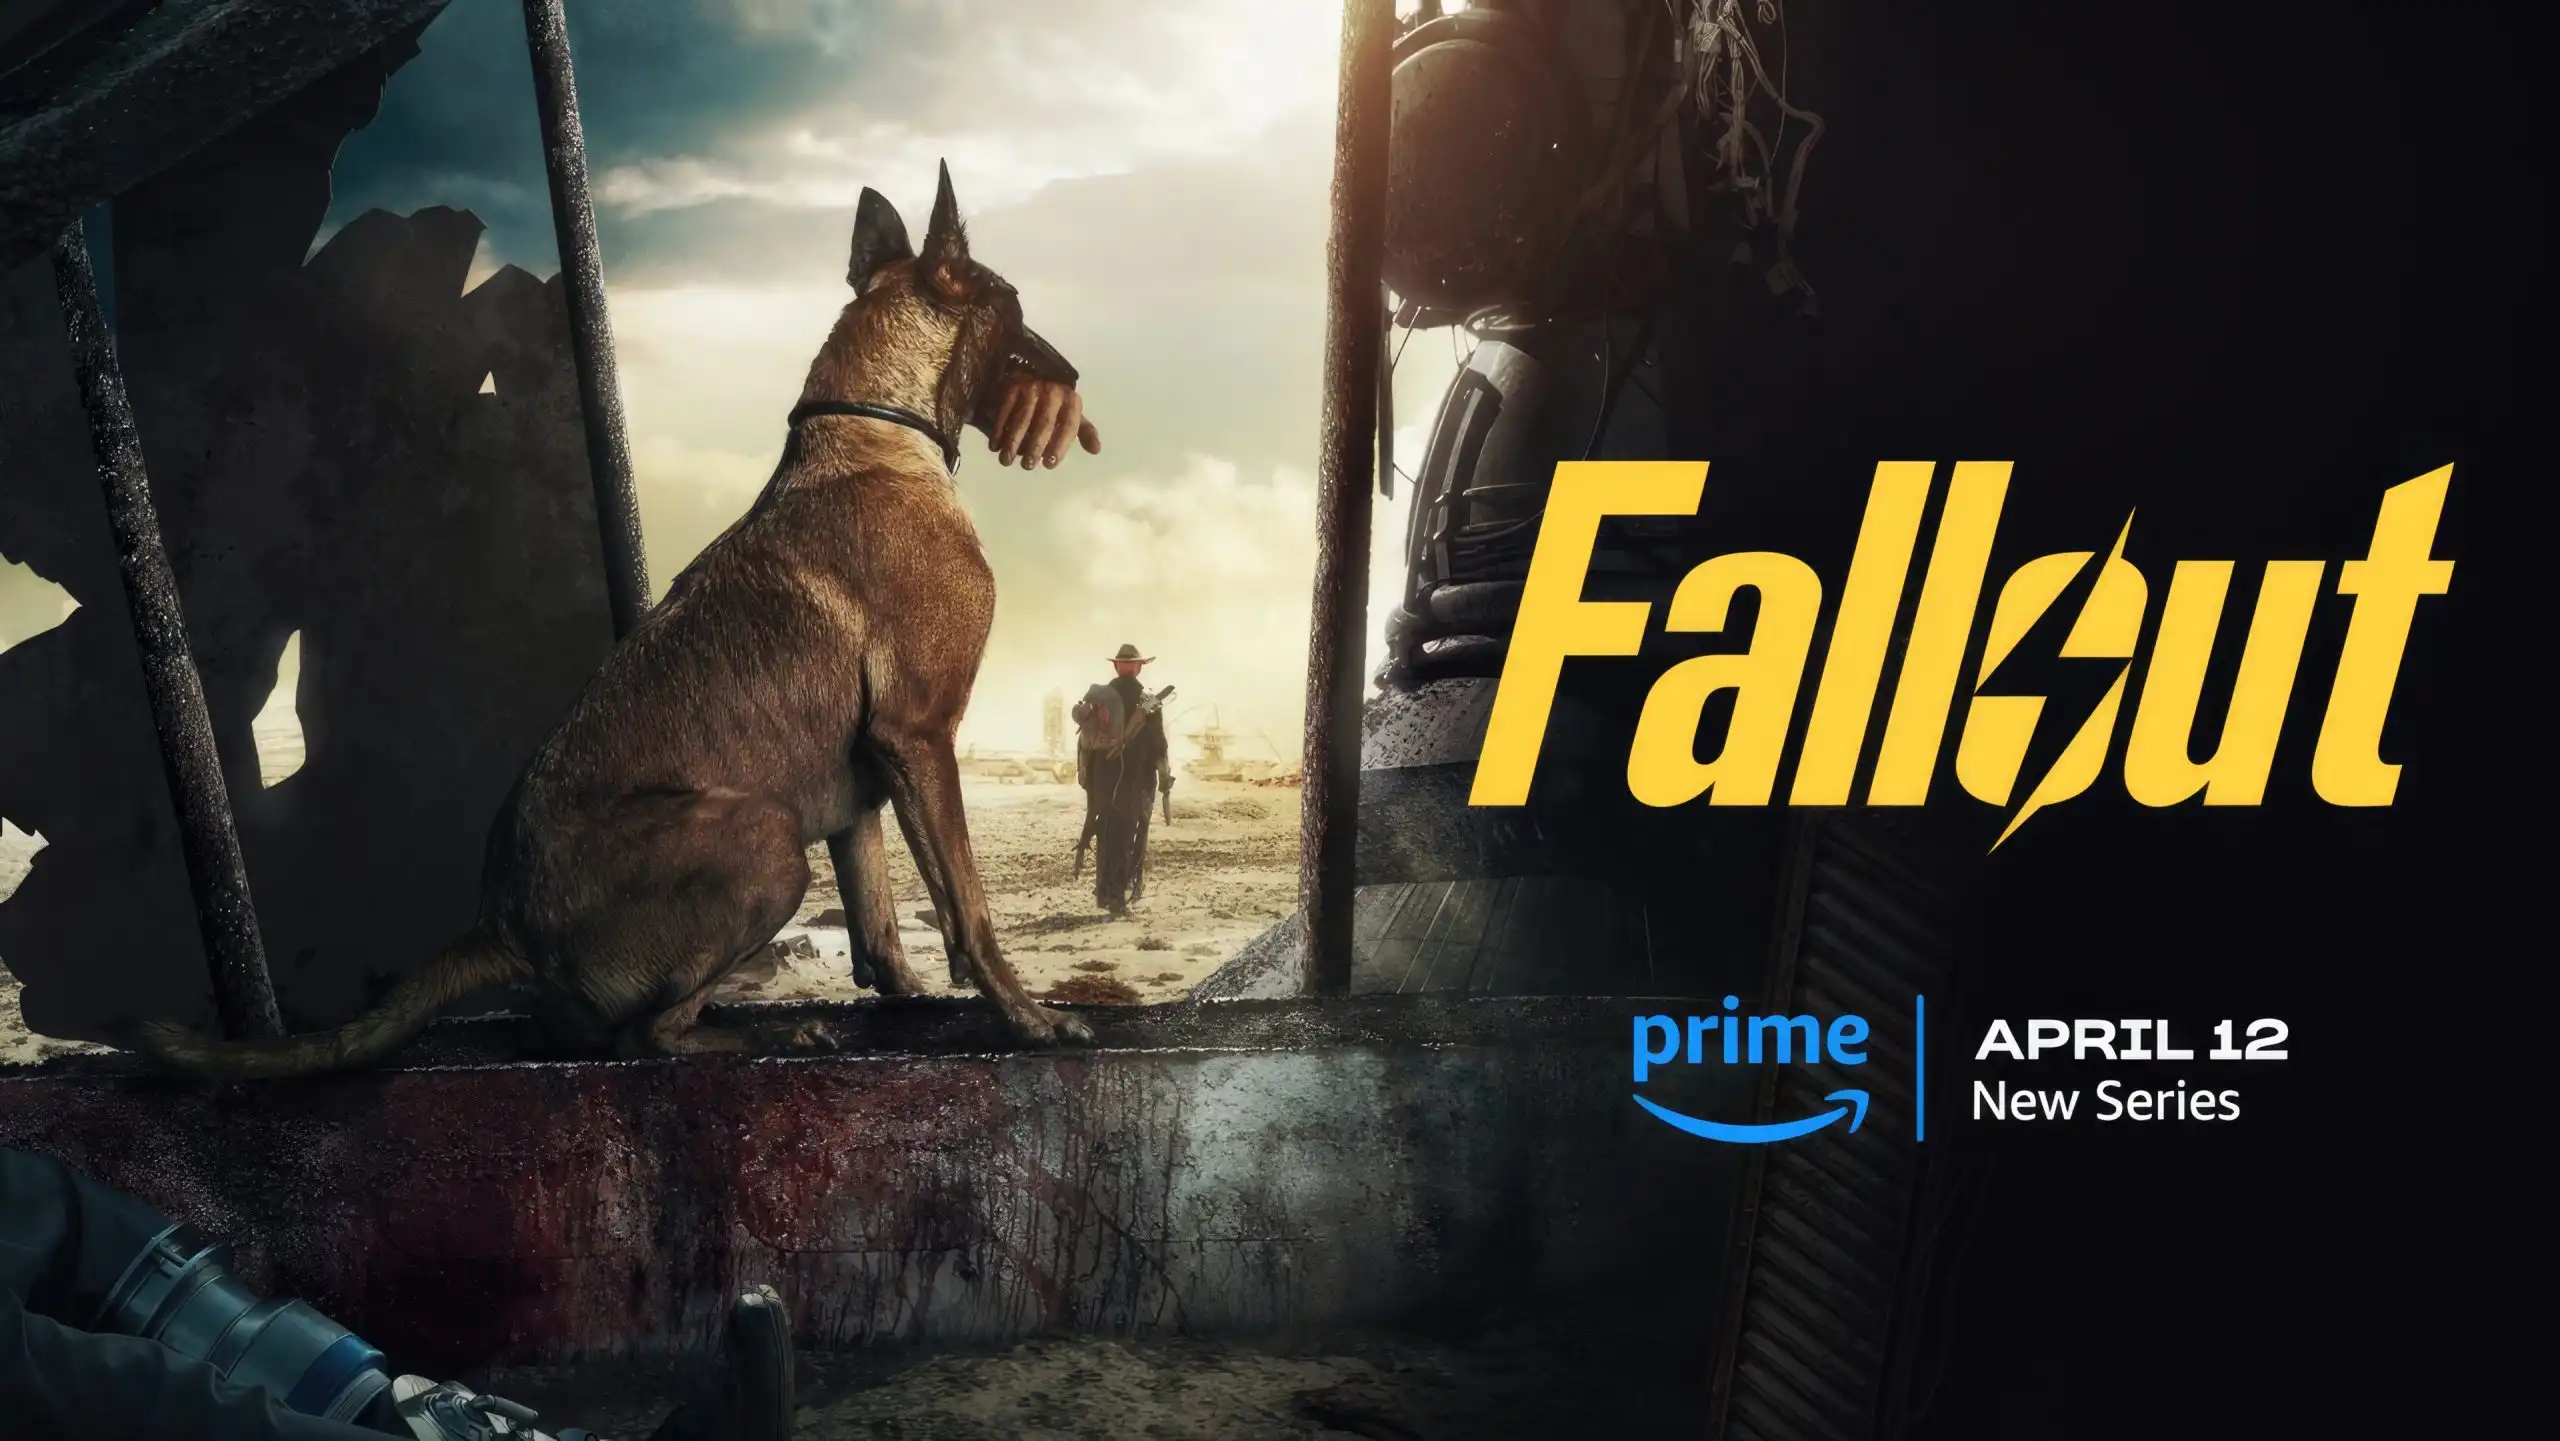 El tráiler de la serie de televisión Fallout revela la jugabilidad de Fallout 76 Boardwalk Paradise